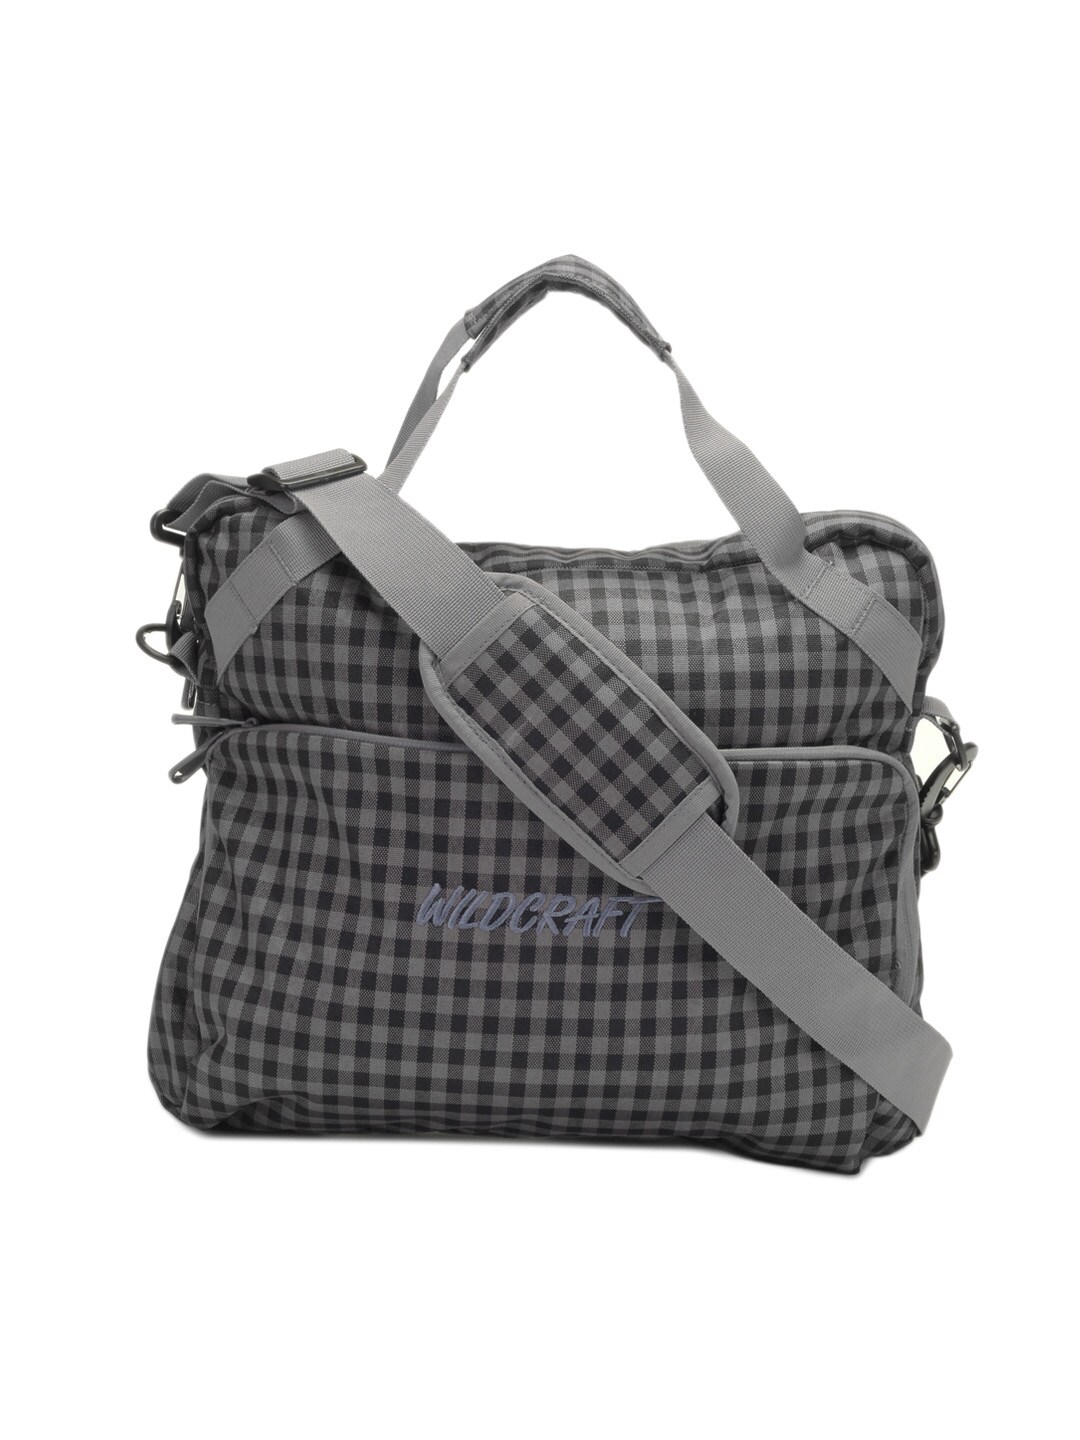 Wildcraft Unisex Grey & Black Checked Spawn Laptop Bag